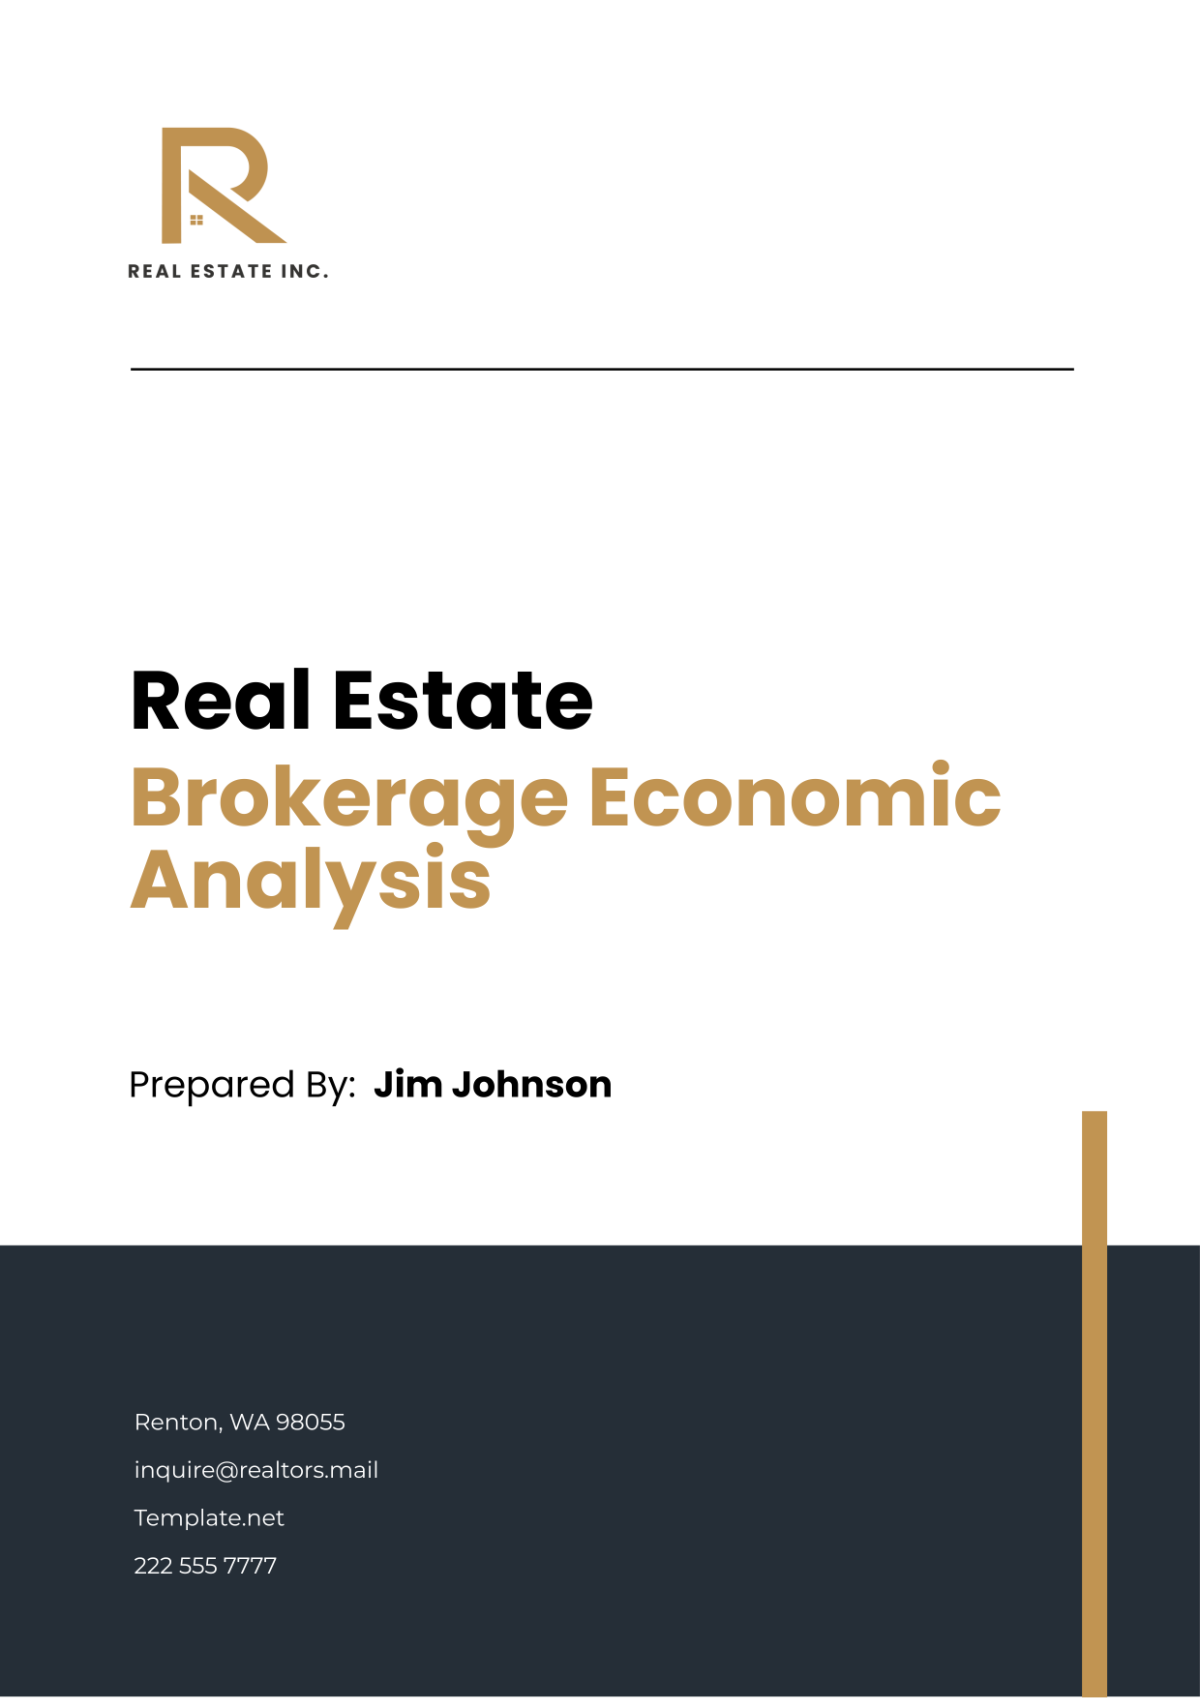 Real Estate Brokerage Economic Analysis Template